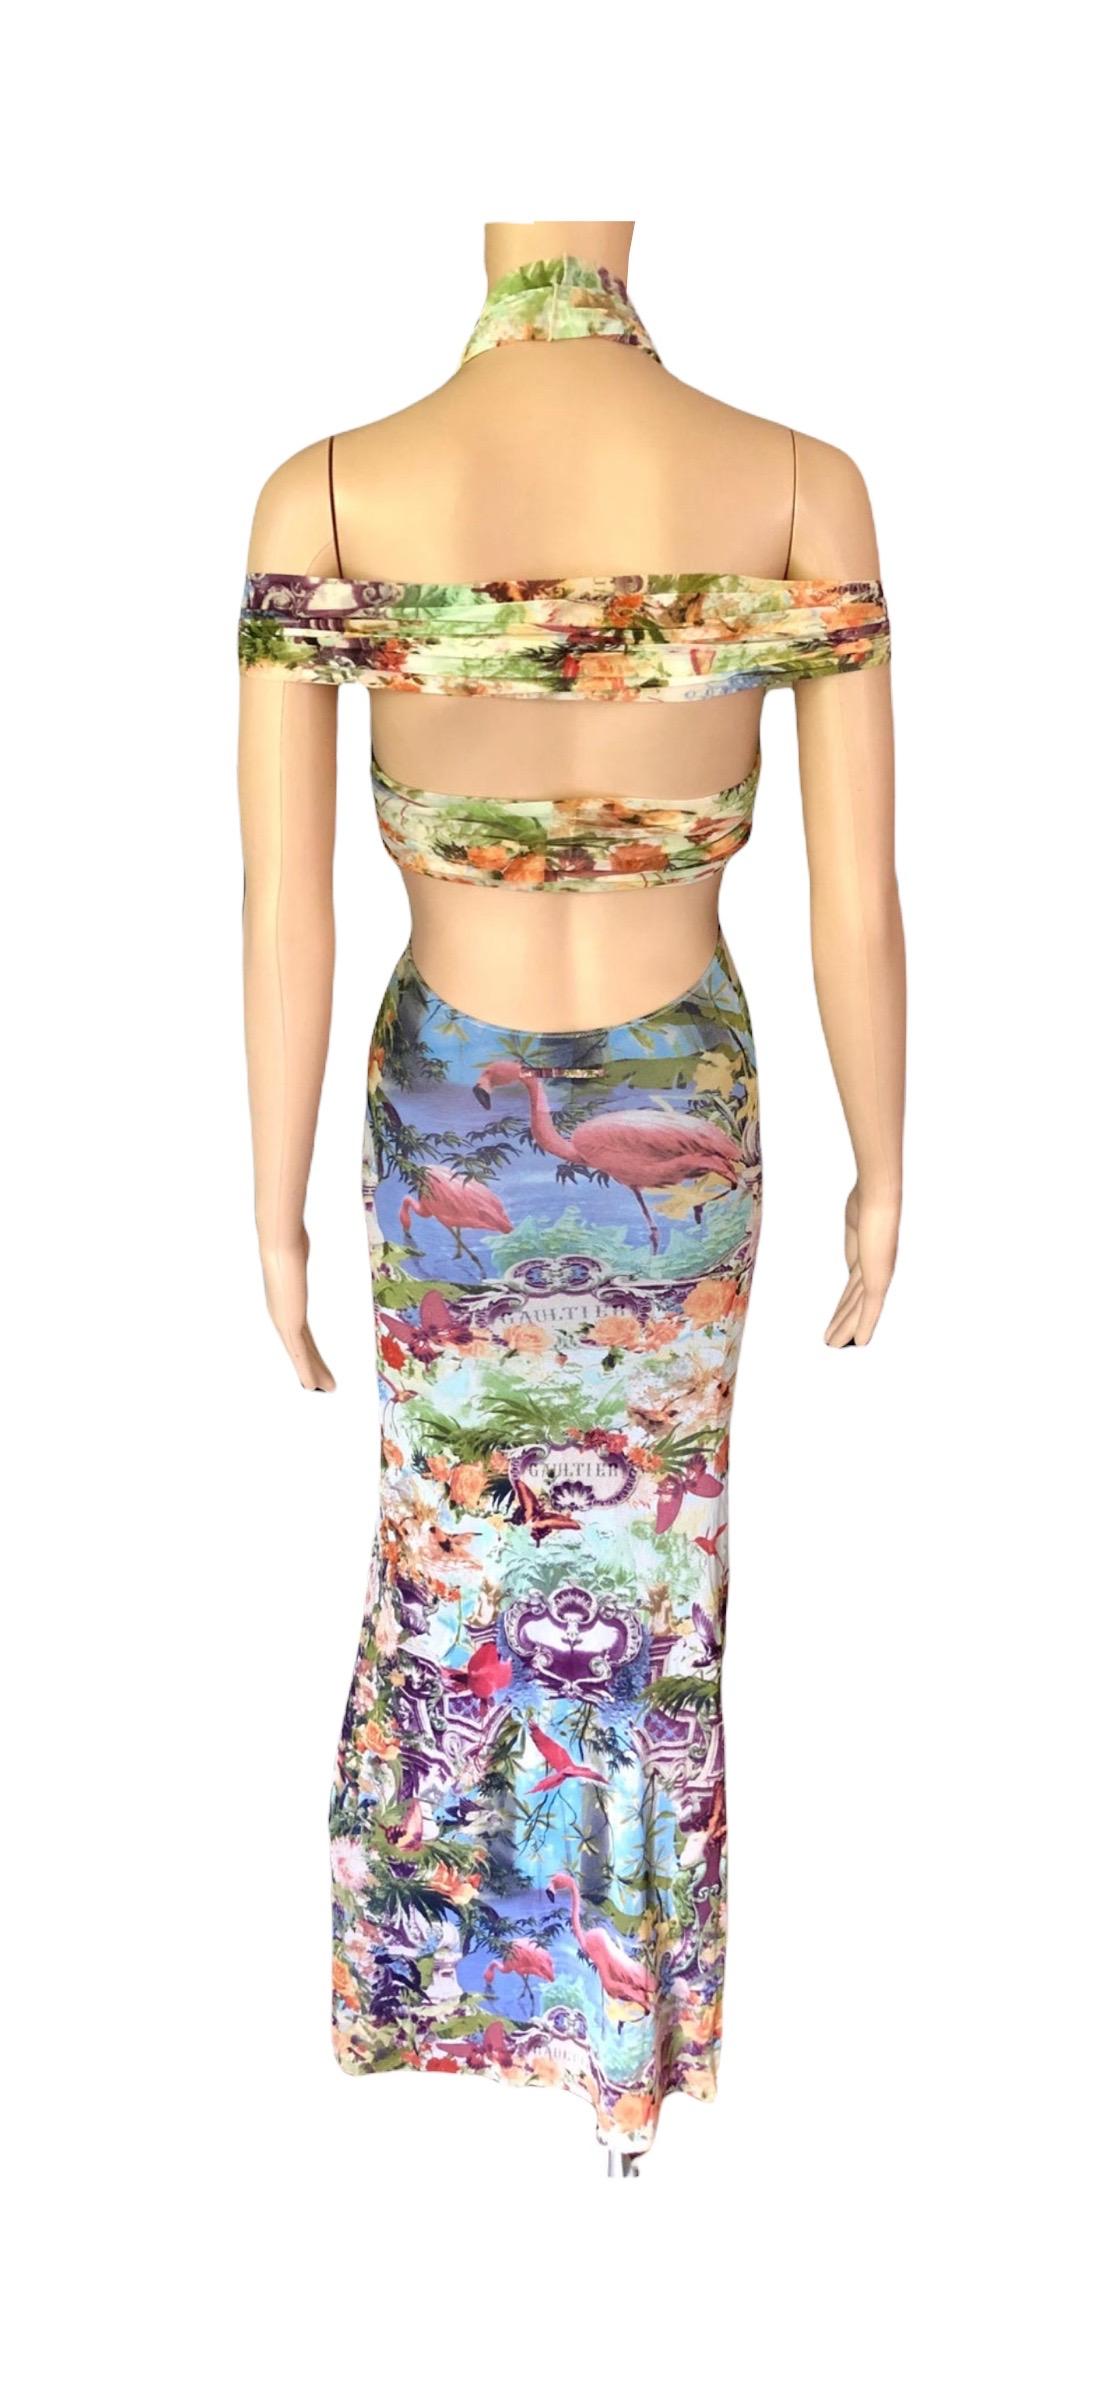 Jean Paul Gaultier Soleil S/S1999 Flamingo Tropical Print Cutout Mesh Maxi Dress For Sale 16